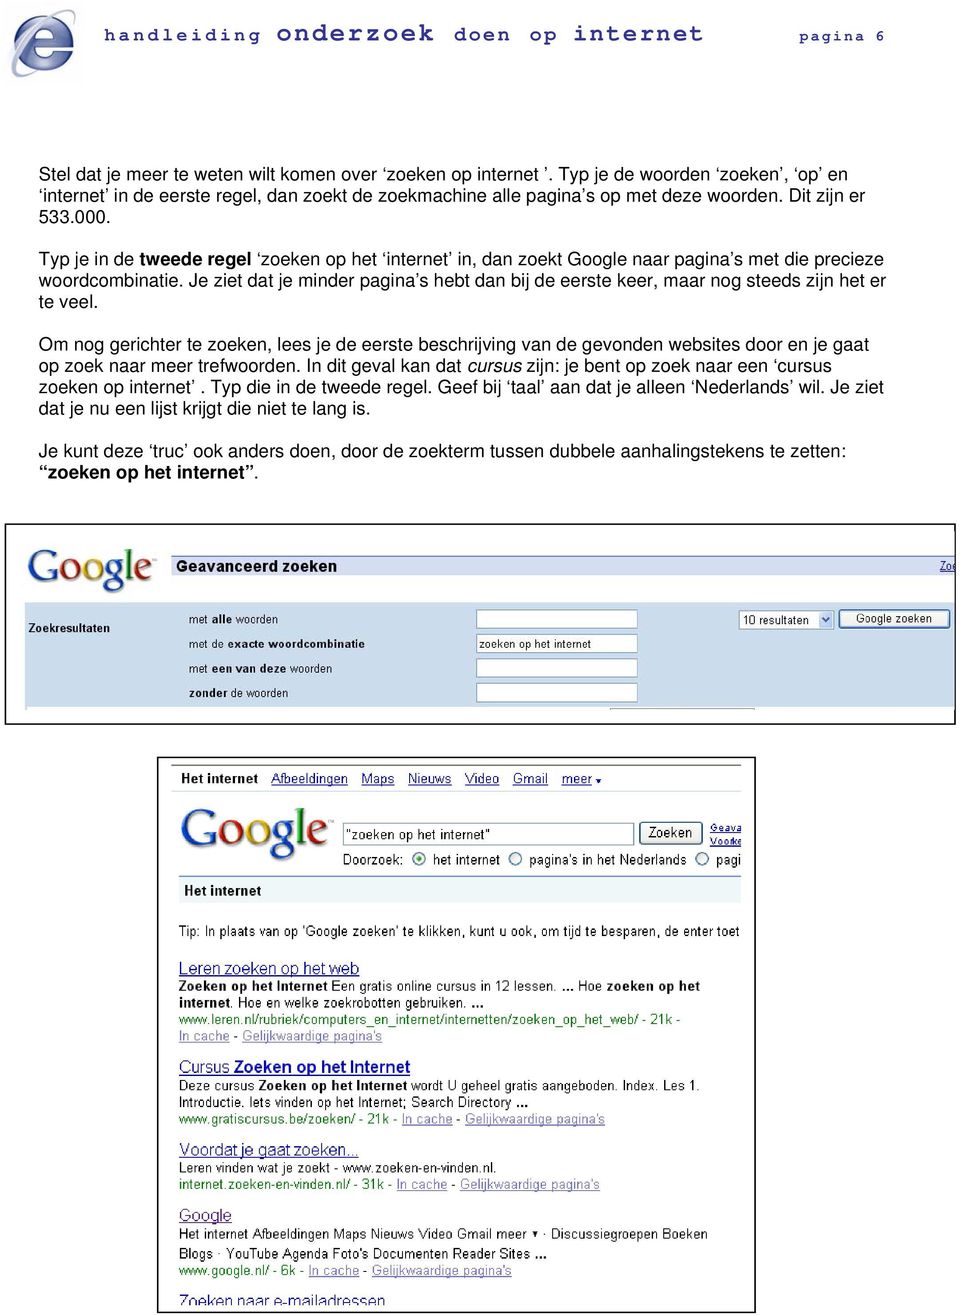 Typ je in de tweede regel zoeken op het internet in, dan zoekt Google naar pagina s met die precieze woordcombinatie.